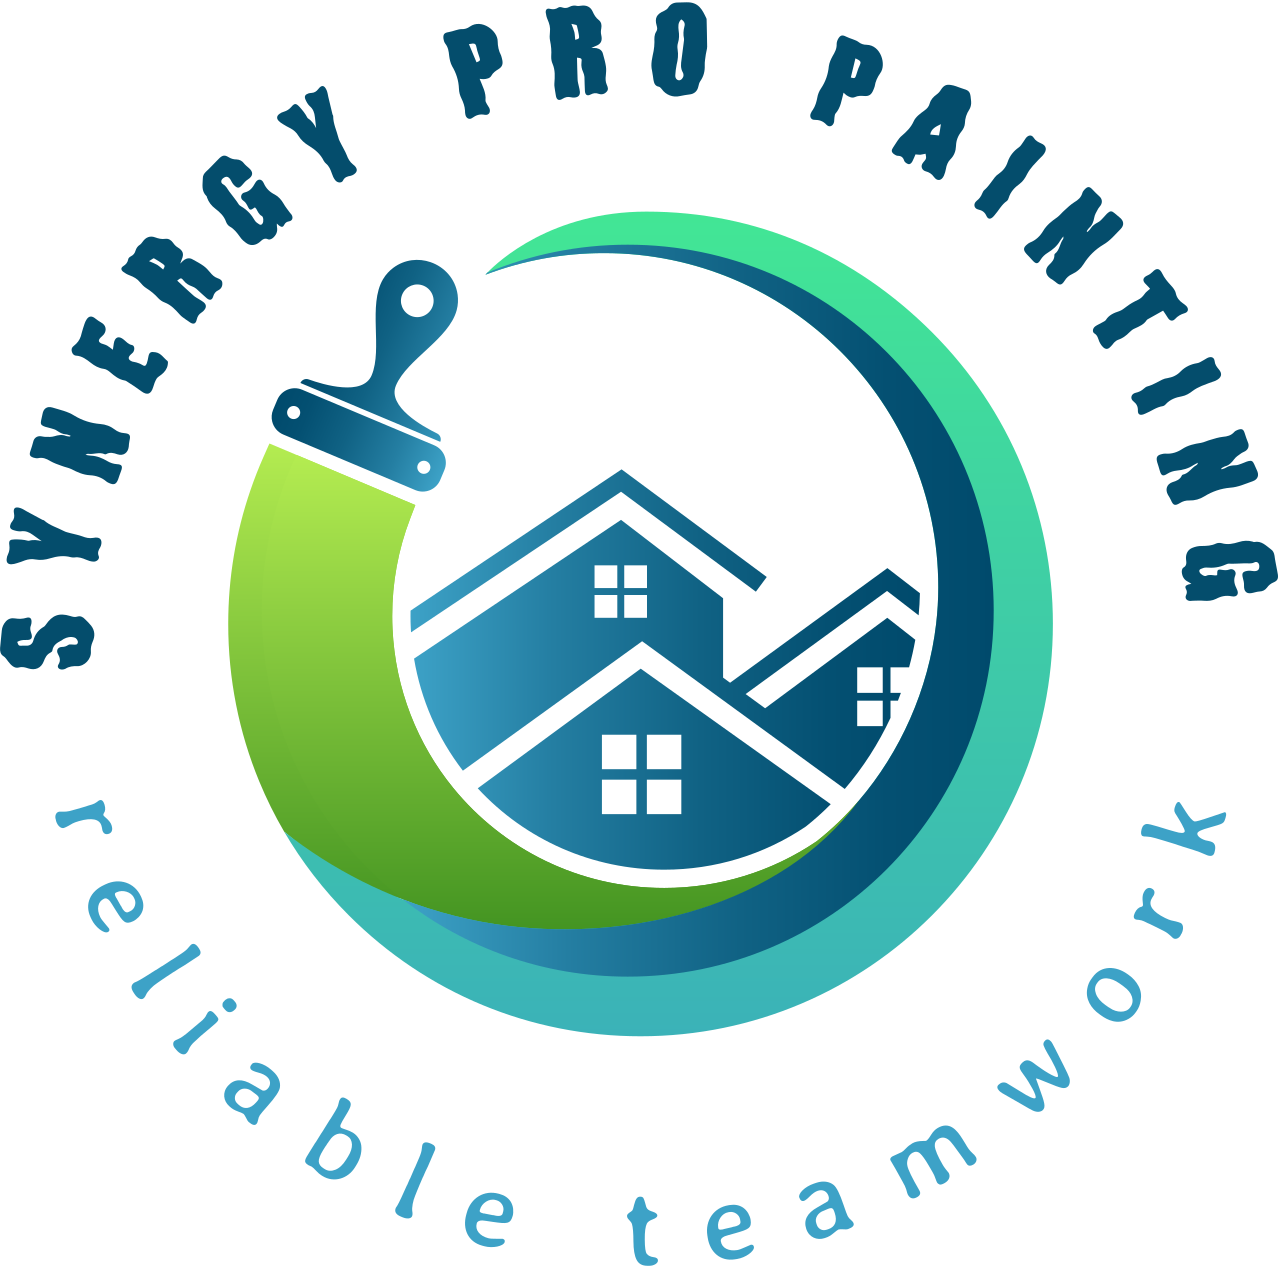 Synergy pro painting 's logo